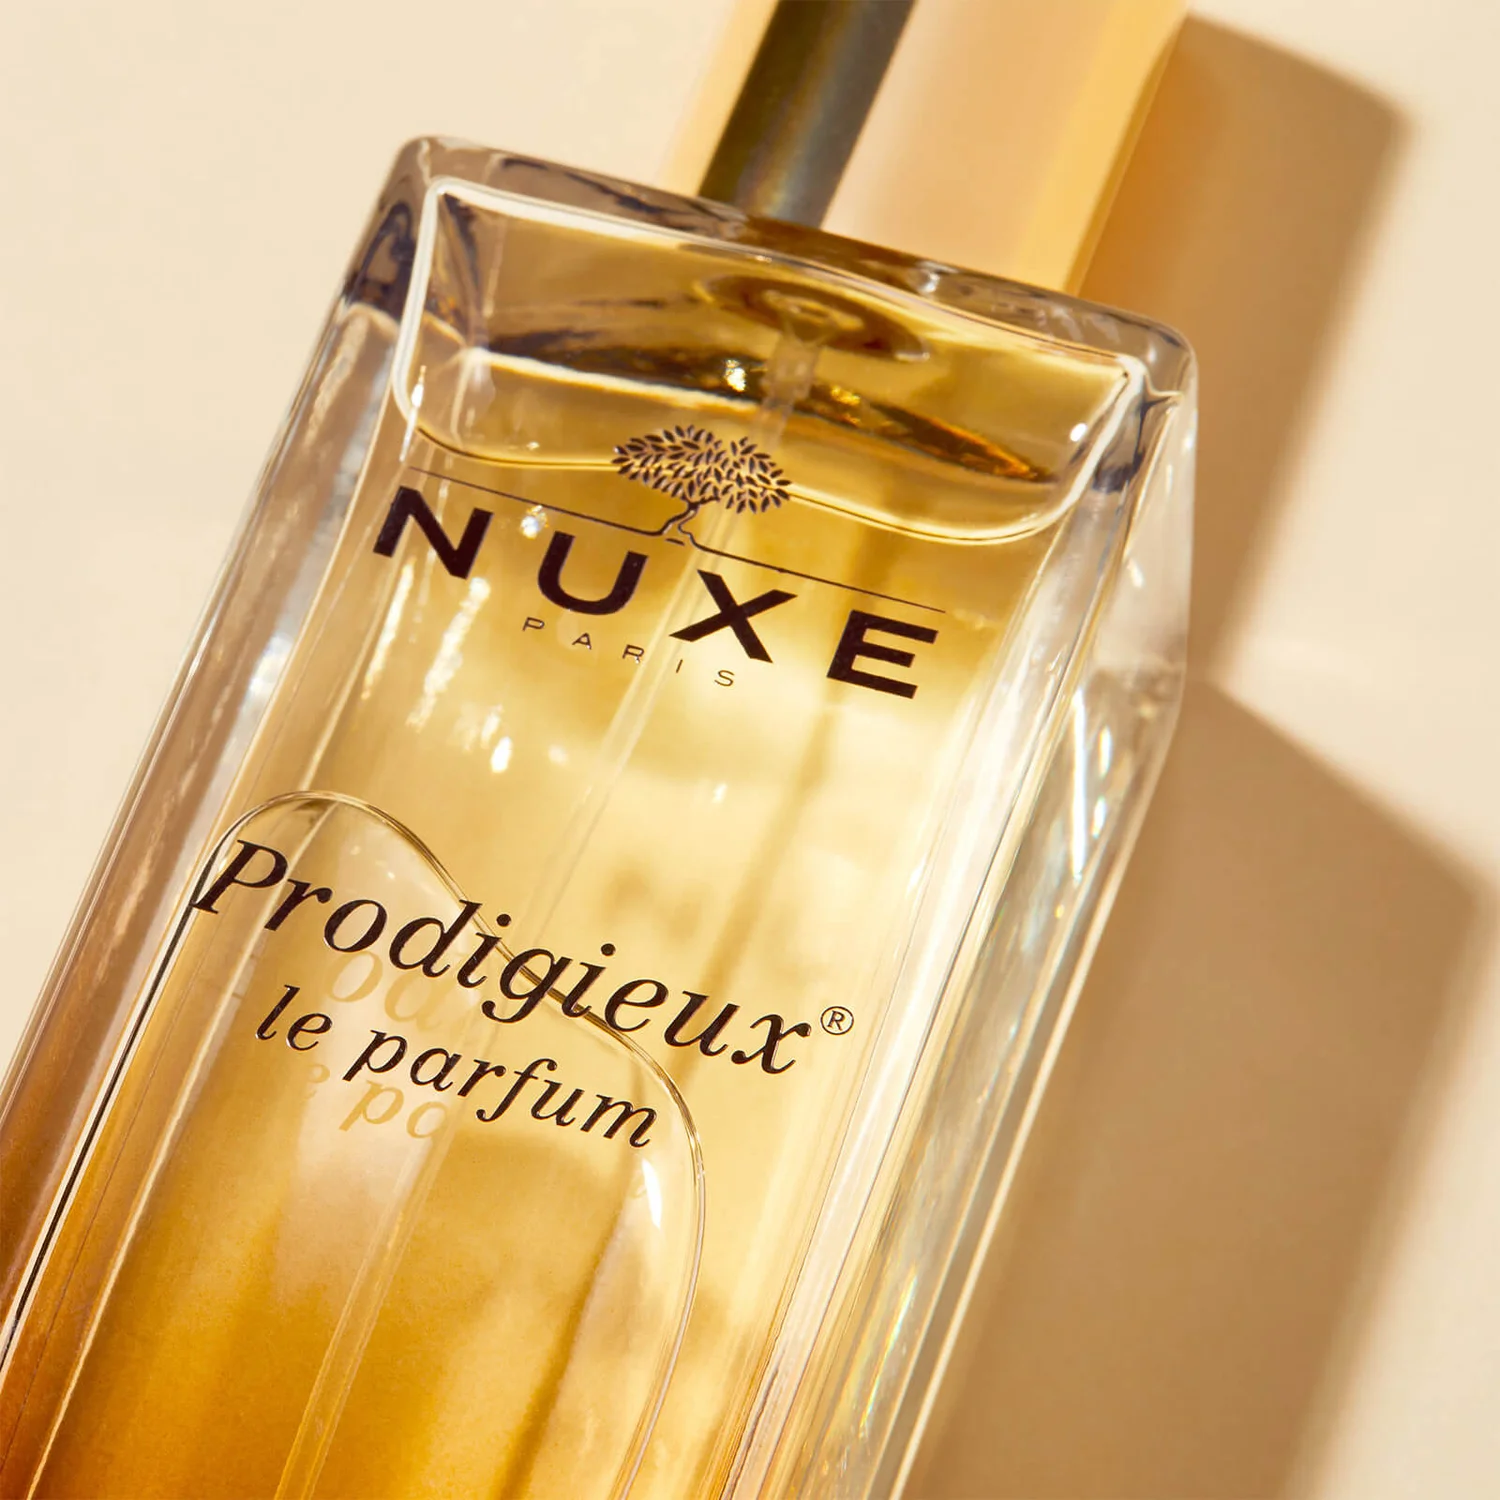 Prodigieux® Le parfum 30 ml